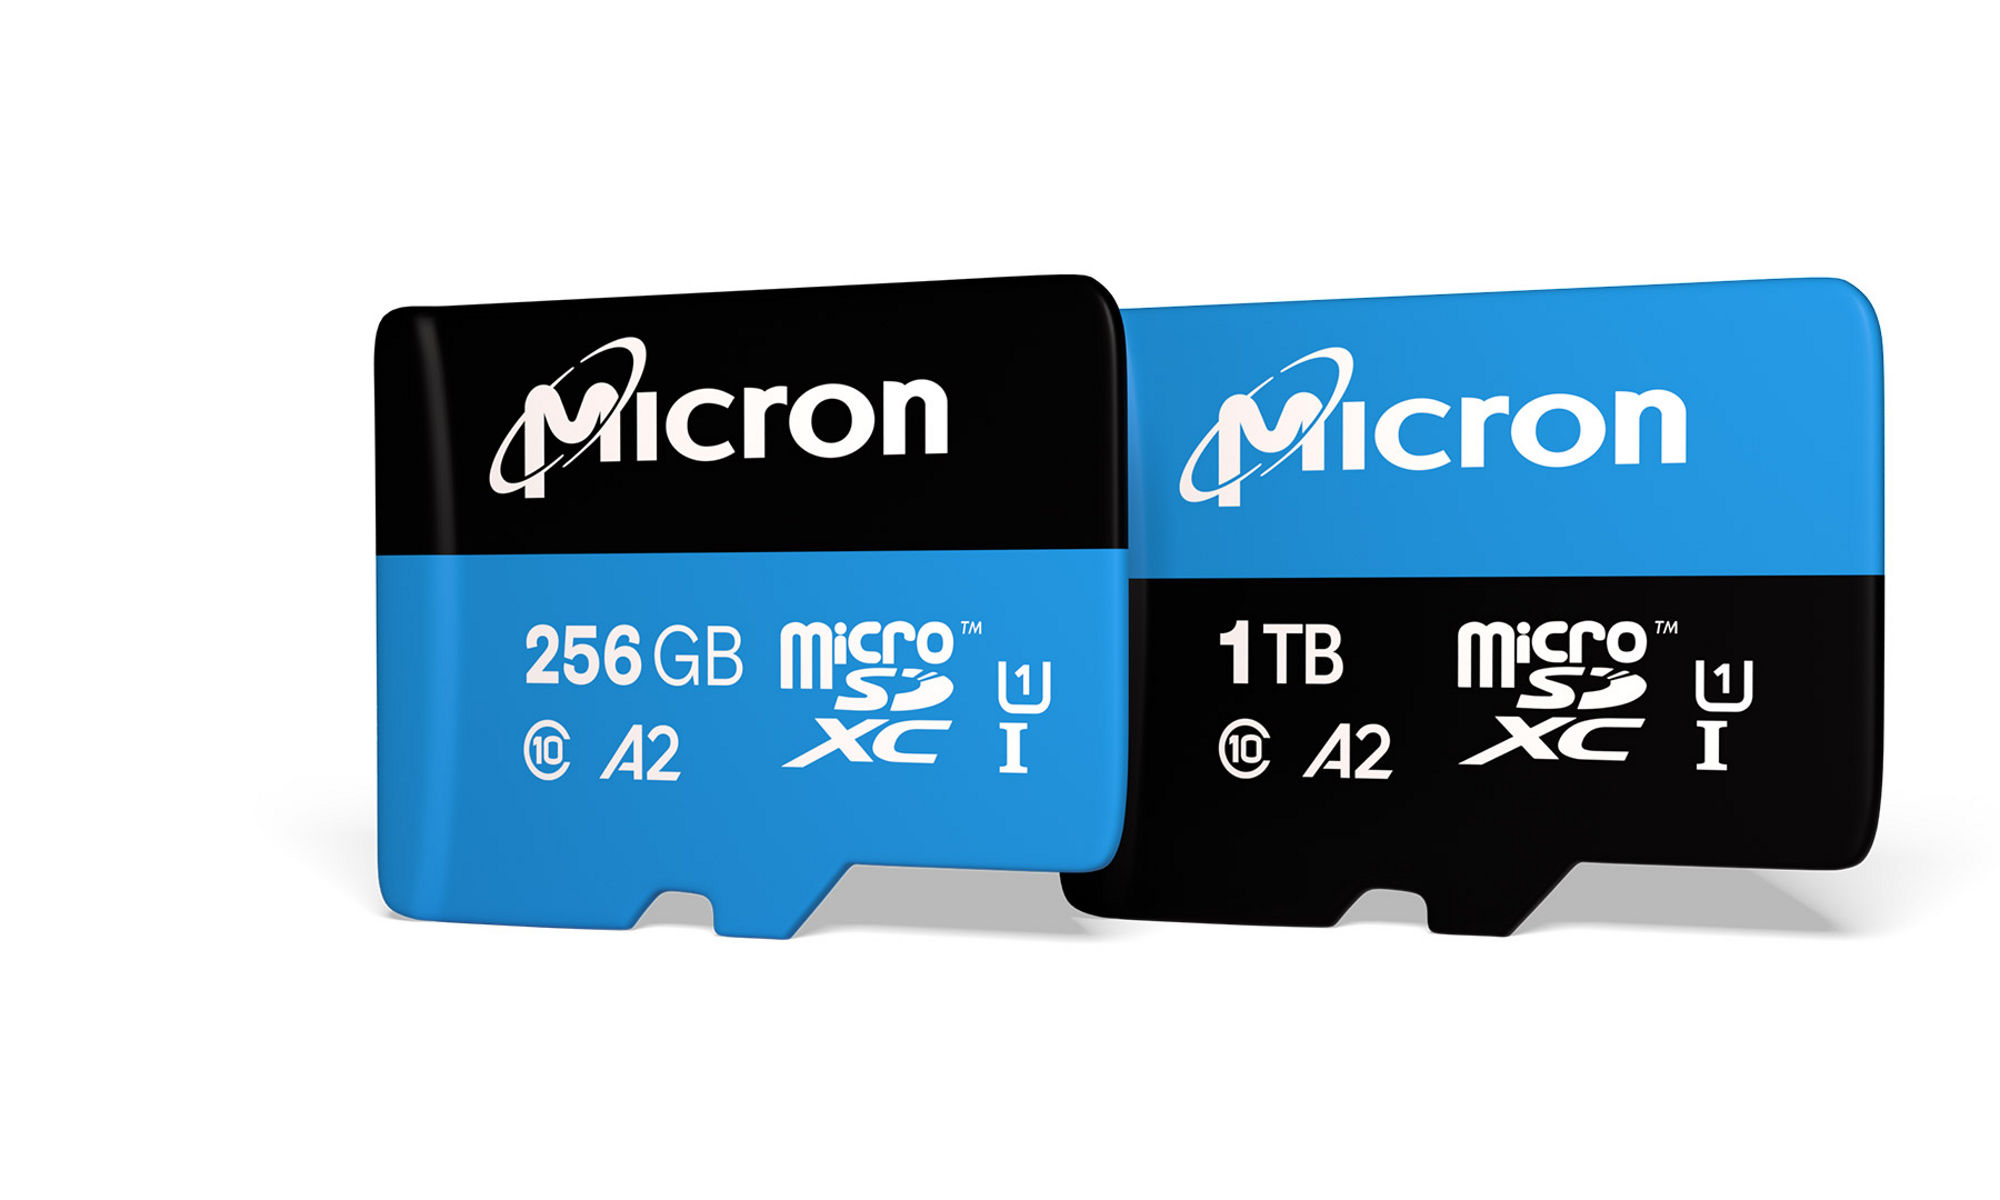 256GB microSD card